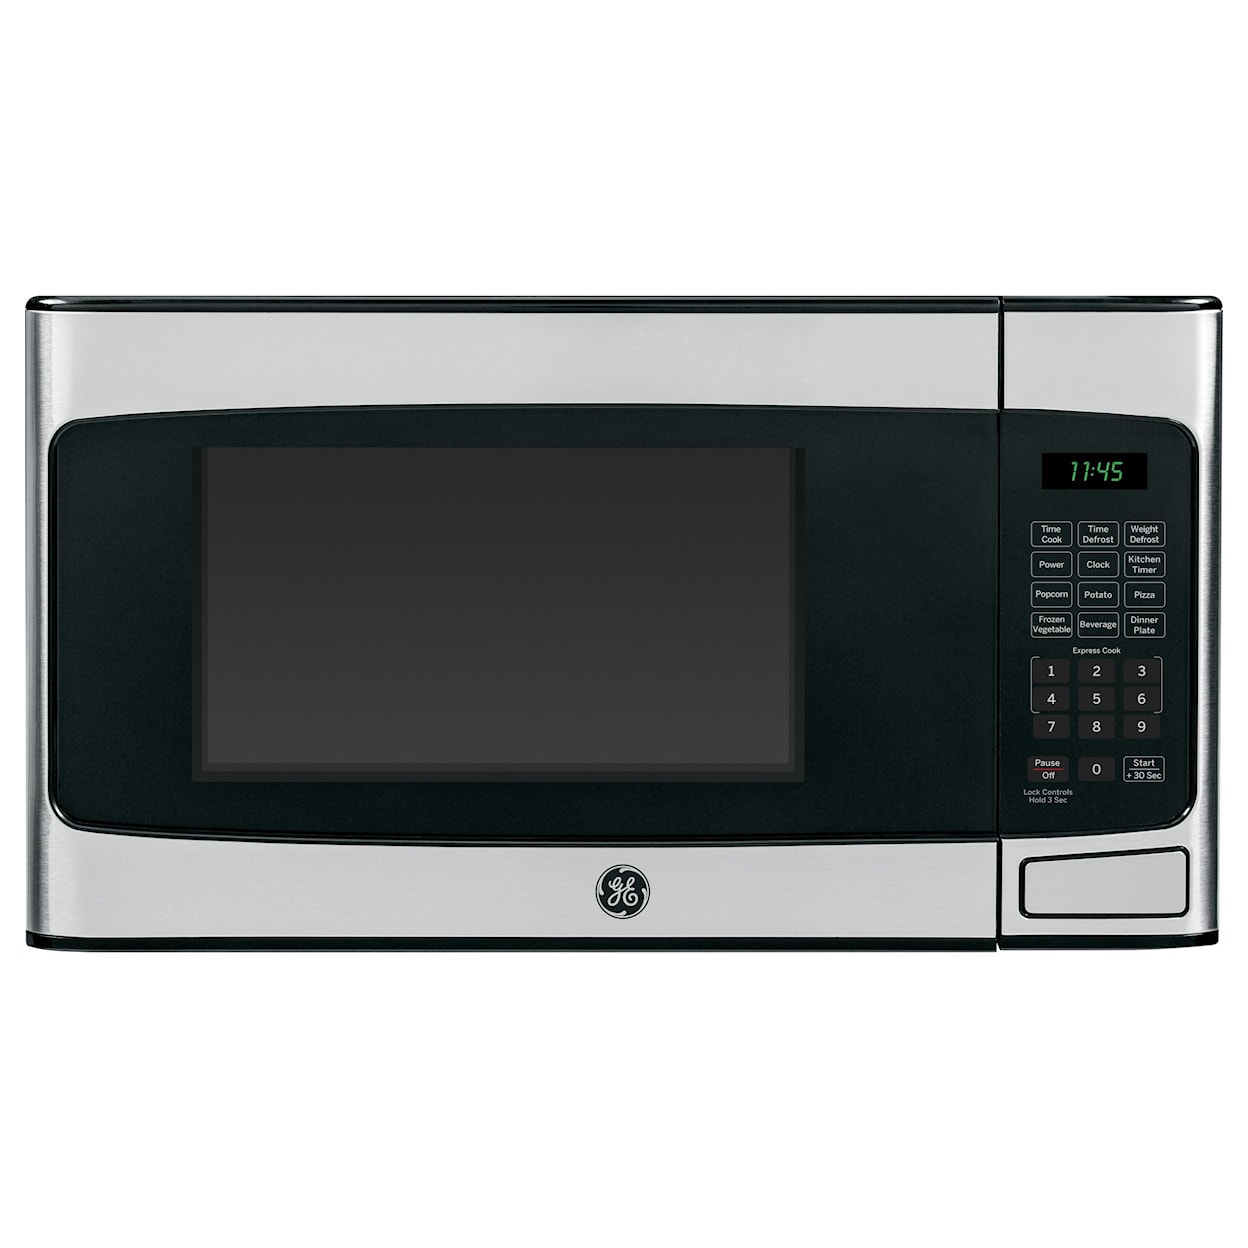 GE Appliances GE Microwaves 1.1 Cu. Ft. Countertop Microwave